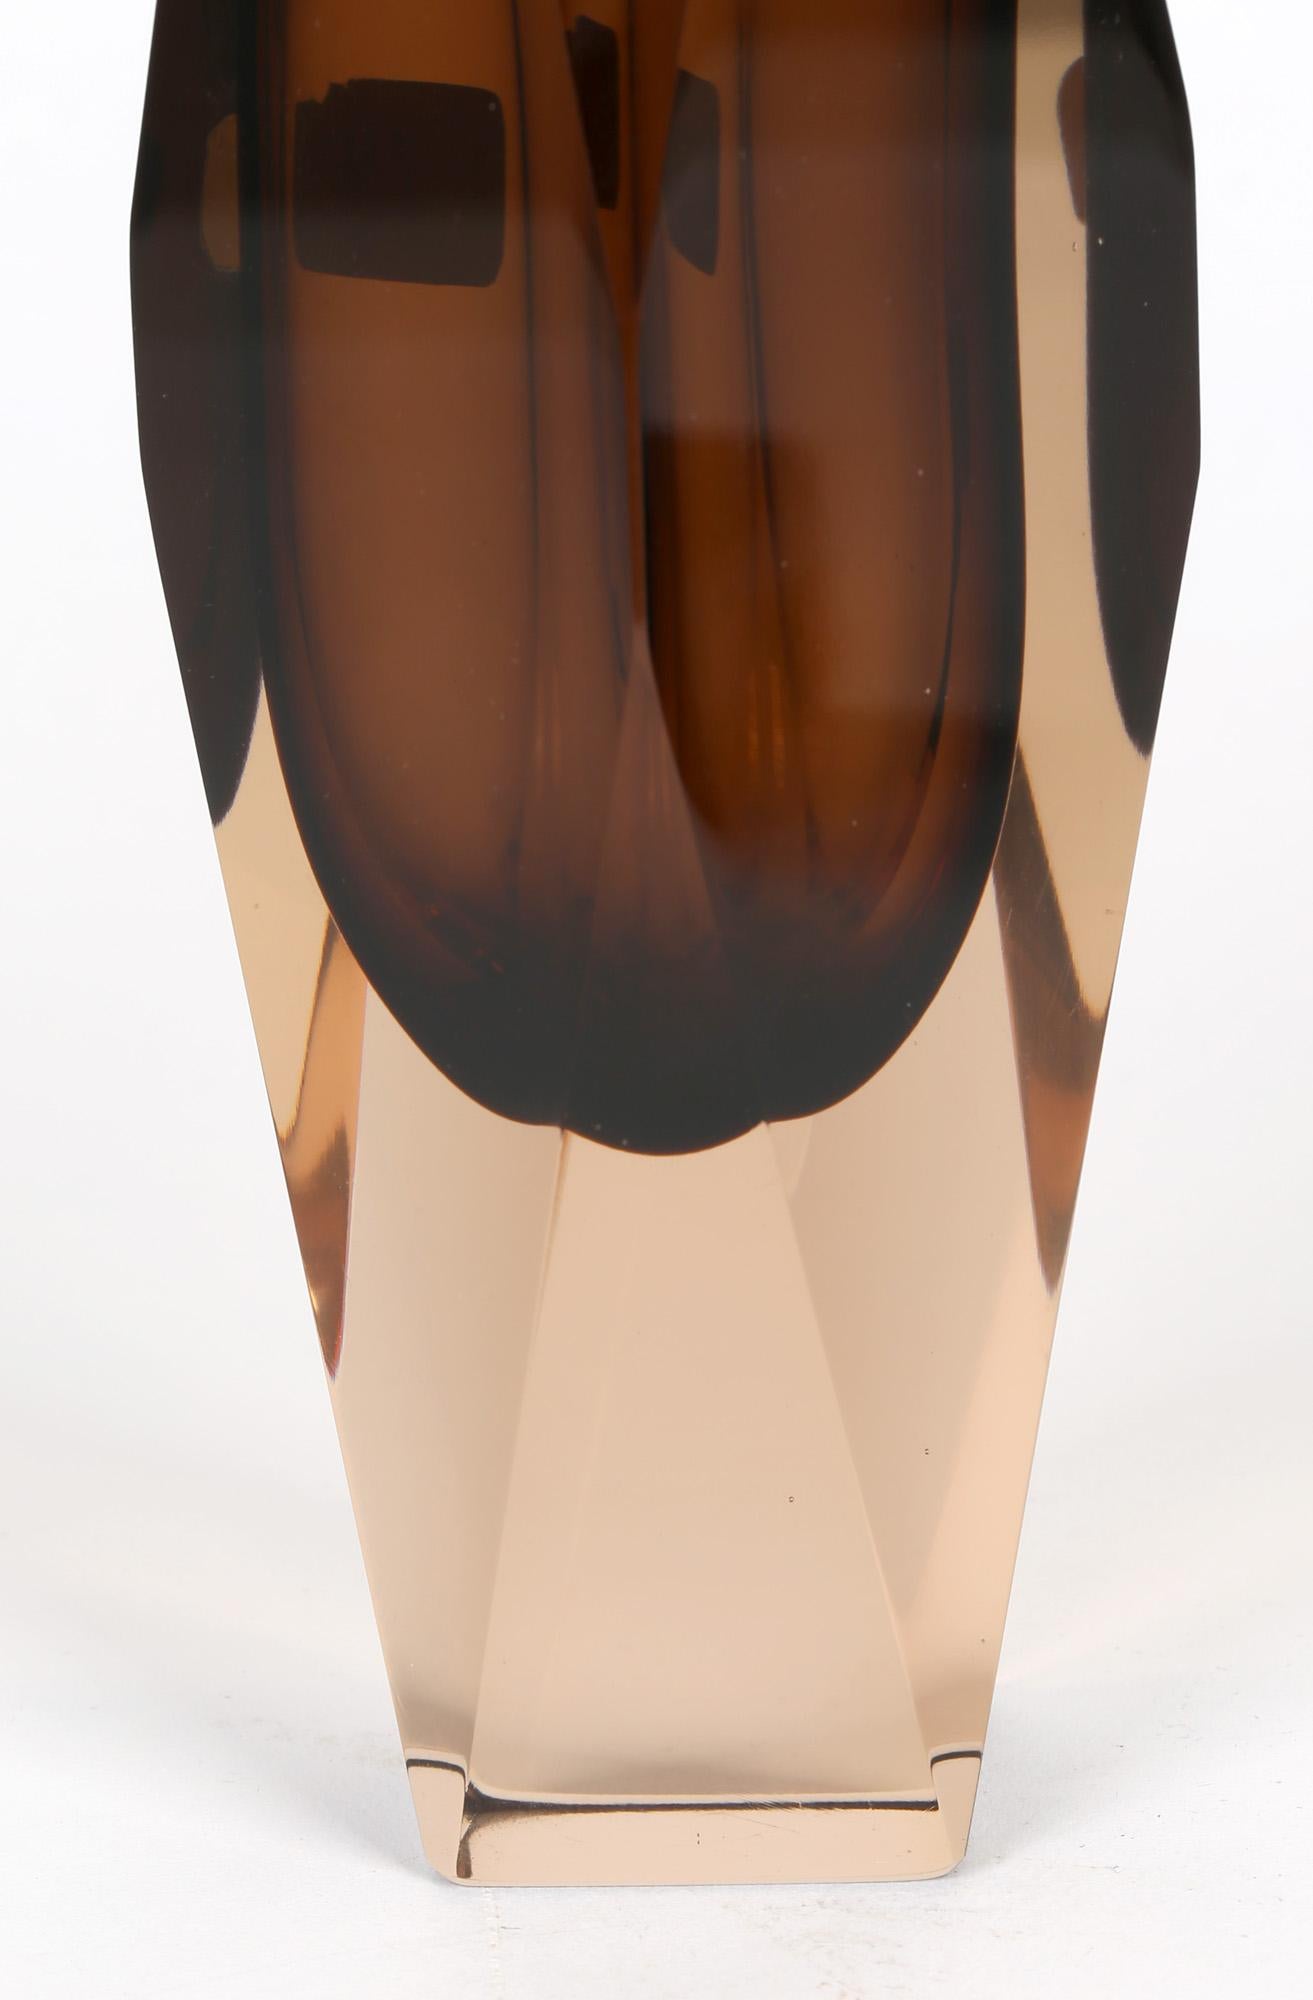 V Nason & C Murano Cinnamon Sommerso Faceted Art Glass Vase 2